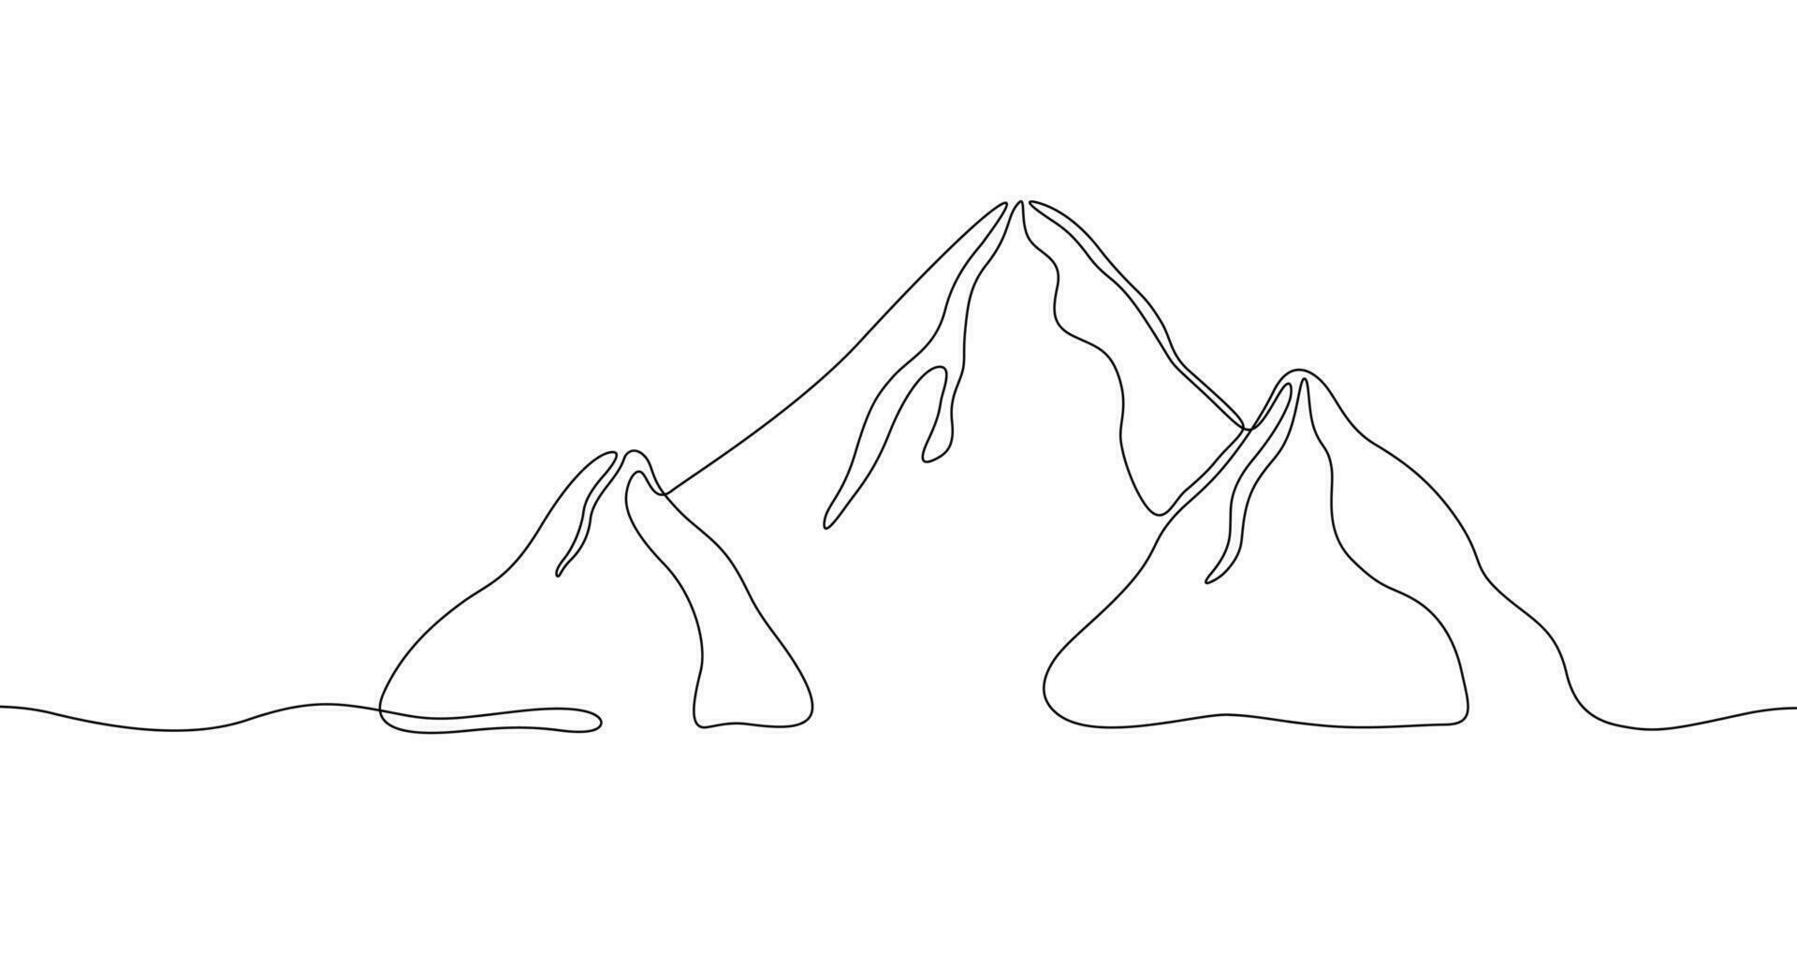 Berge kontinuierlich einer Linie Zeichnung isoliert auf Weiß Hintergrund. Hügel Silhouette im abstrakt linear Stil. vektor